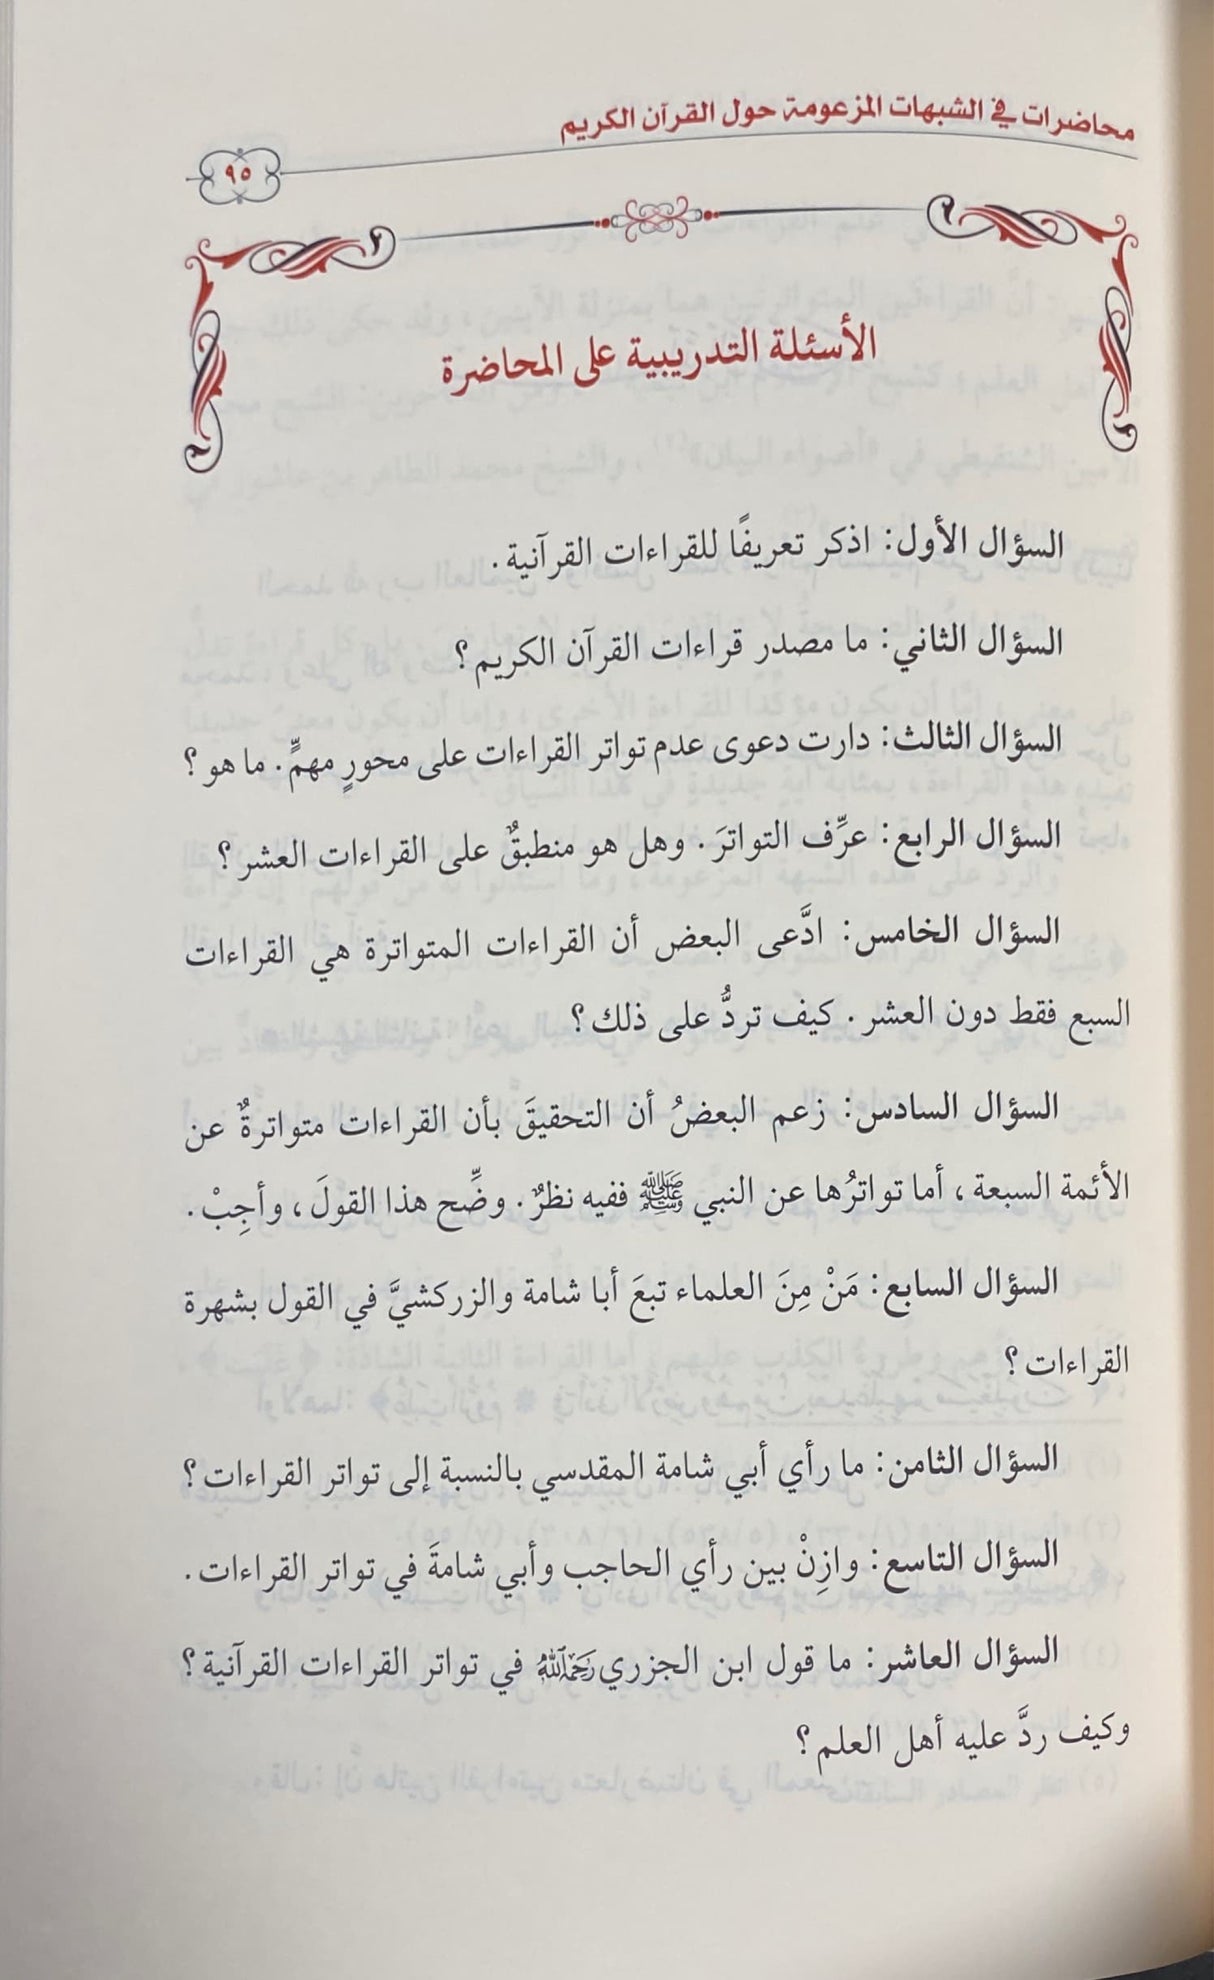 محاضرات في شبهات المزعومة حول القران الكريم    Muhadarat Fi Shubuhat Al Mazuma Hawl Al Quran